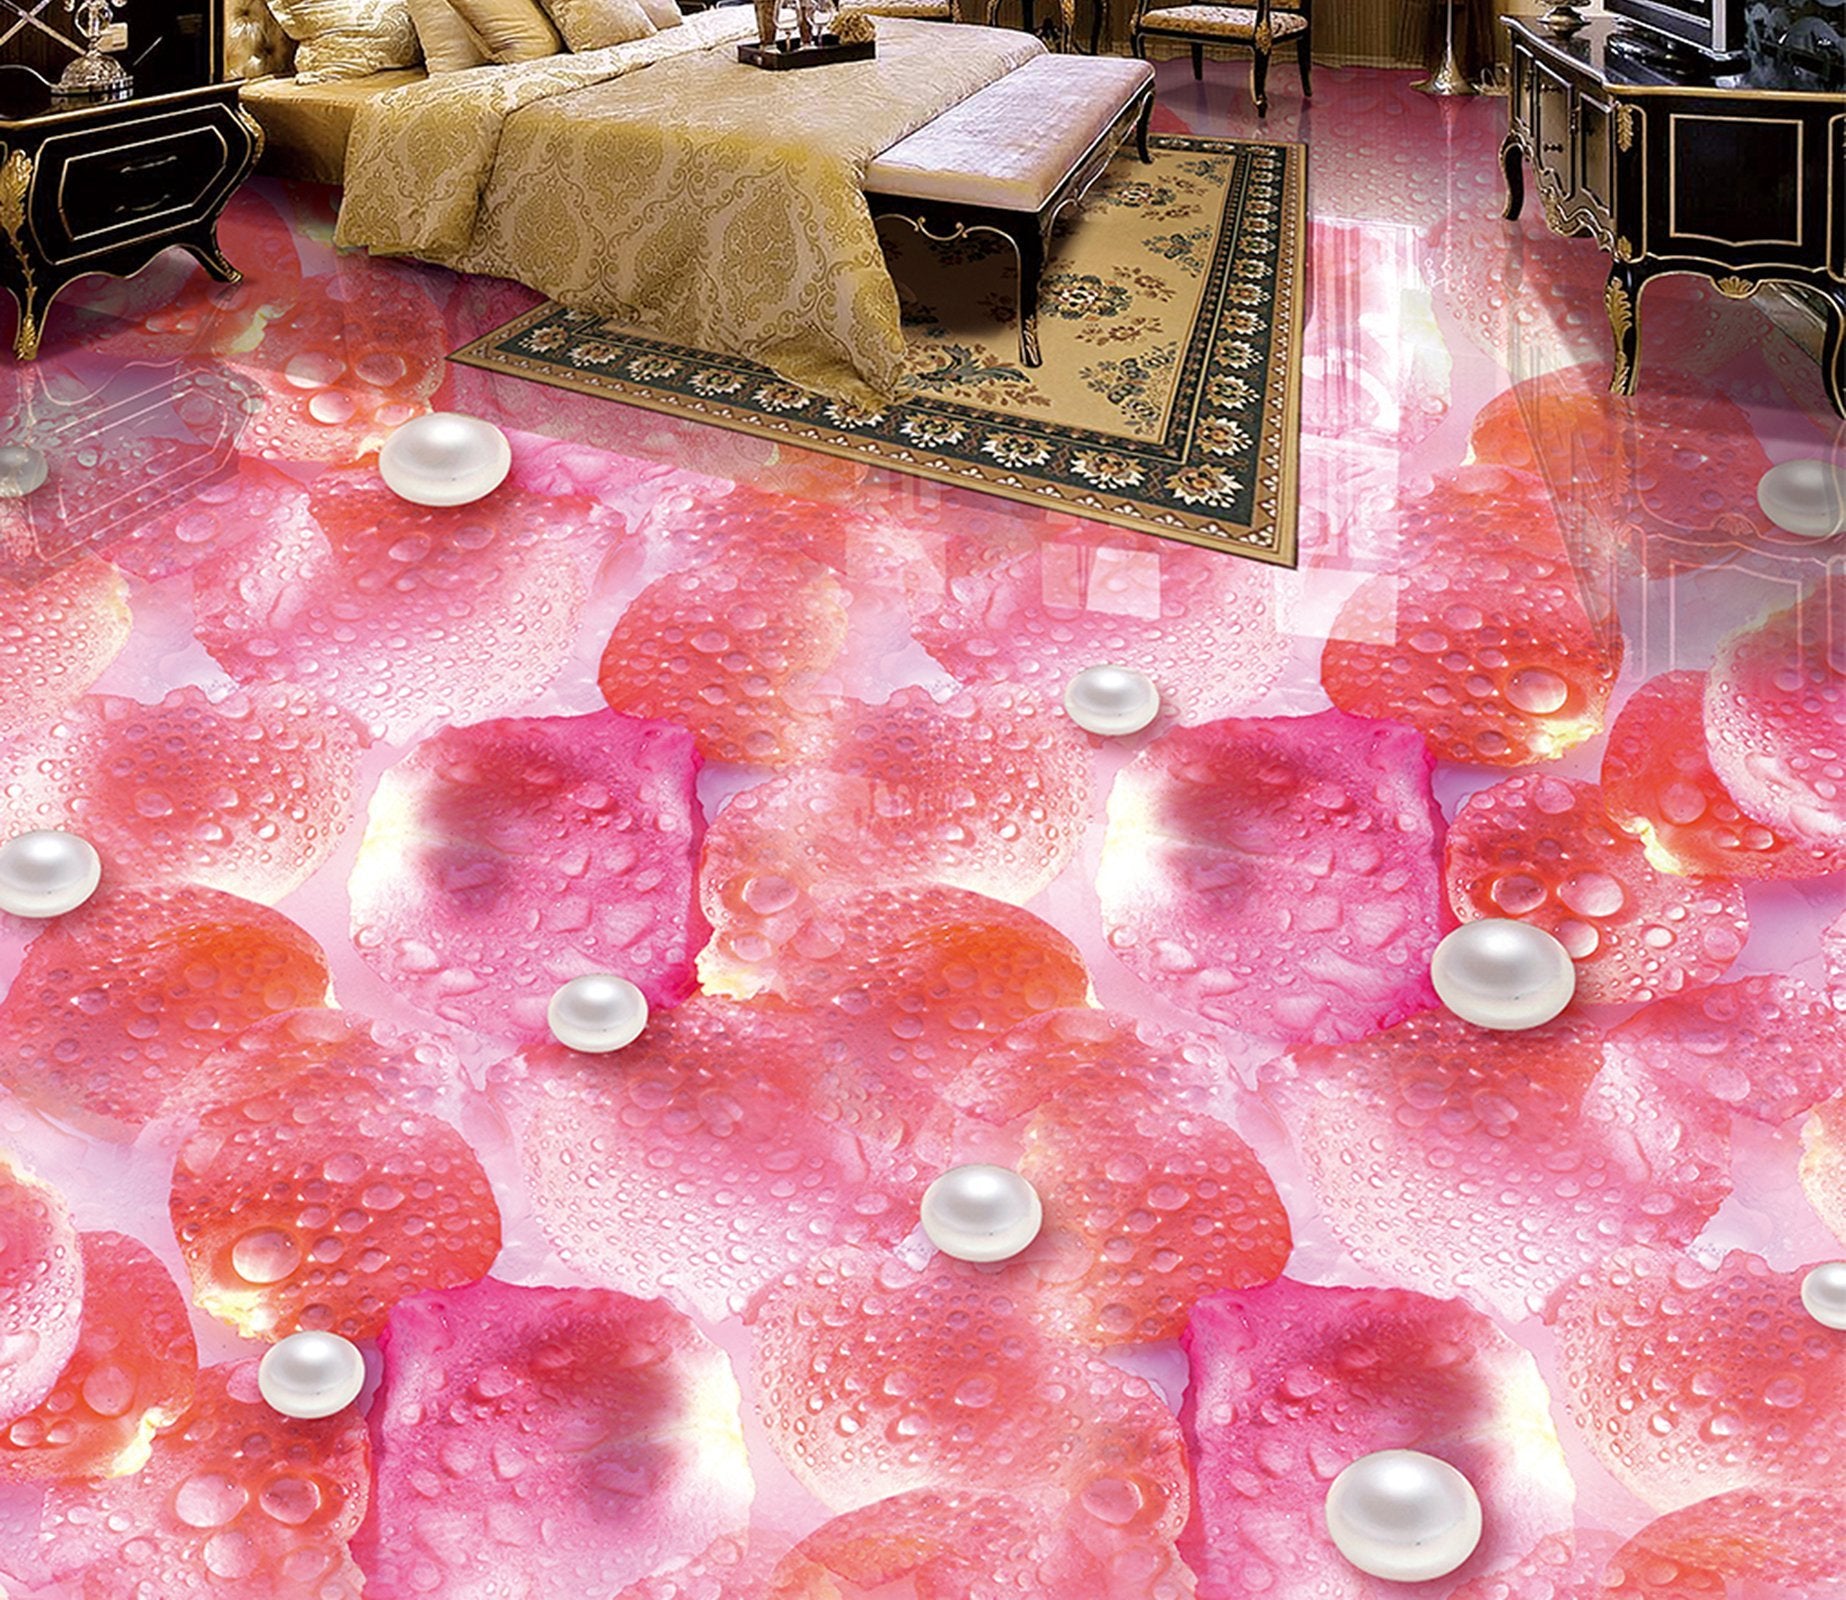 3D Pink Petal Pearl WG380 Floor Mural Wallpaper AJ Wallpaper 2 